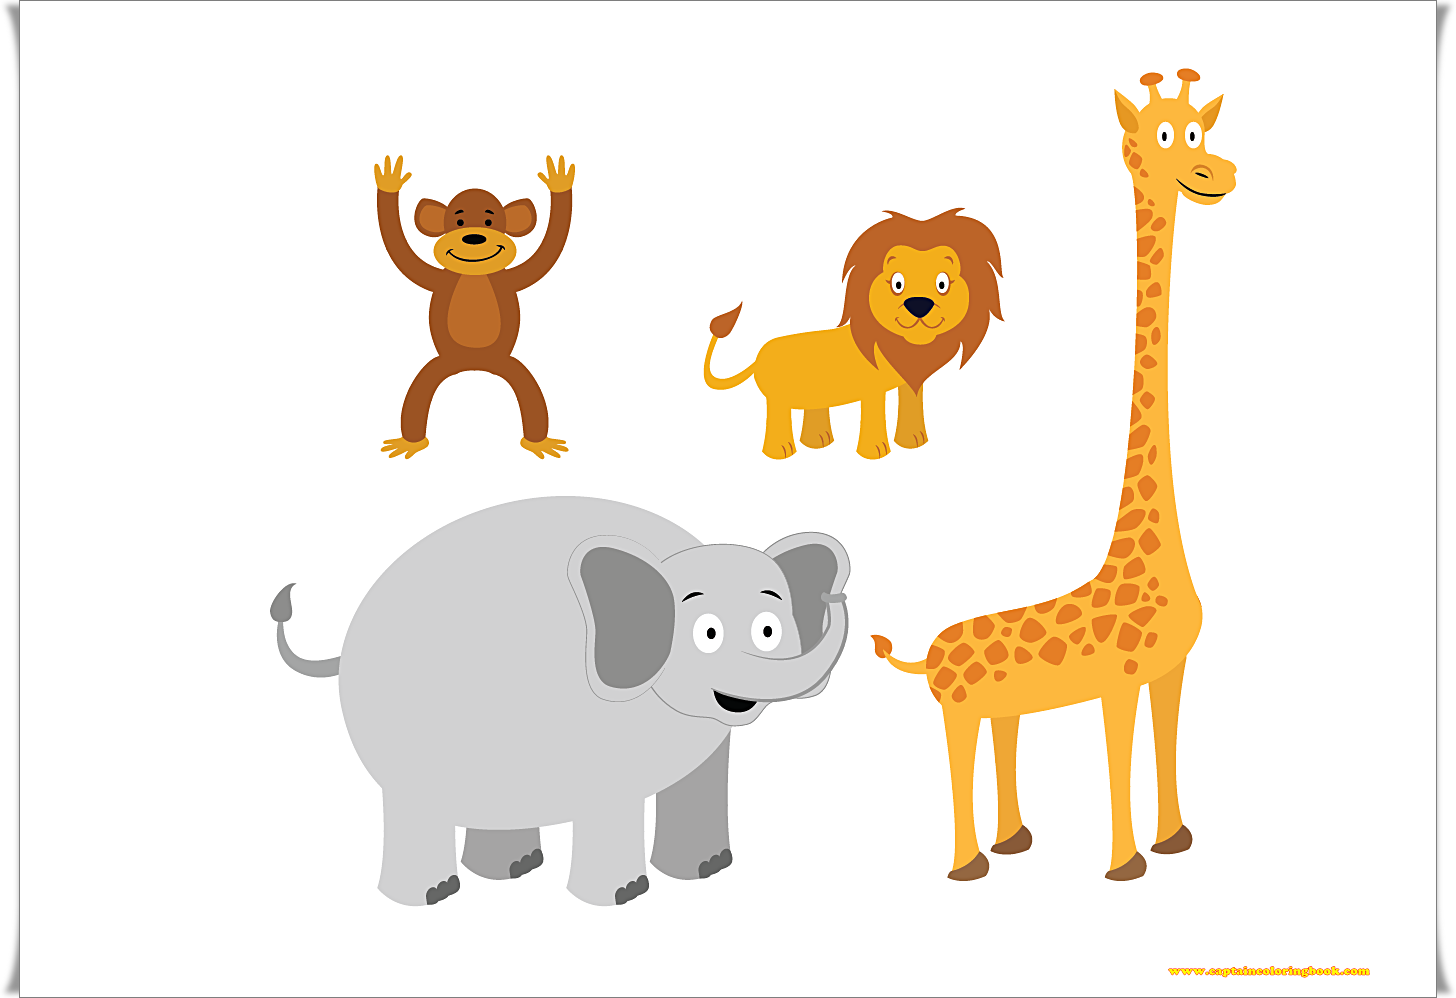 Giraffe elephant monkey. Африканские животные для детей. Африканские животные вектор. Животные для детей вектор. Мультяшные животные Африки.